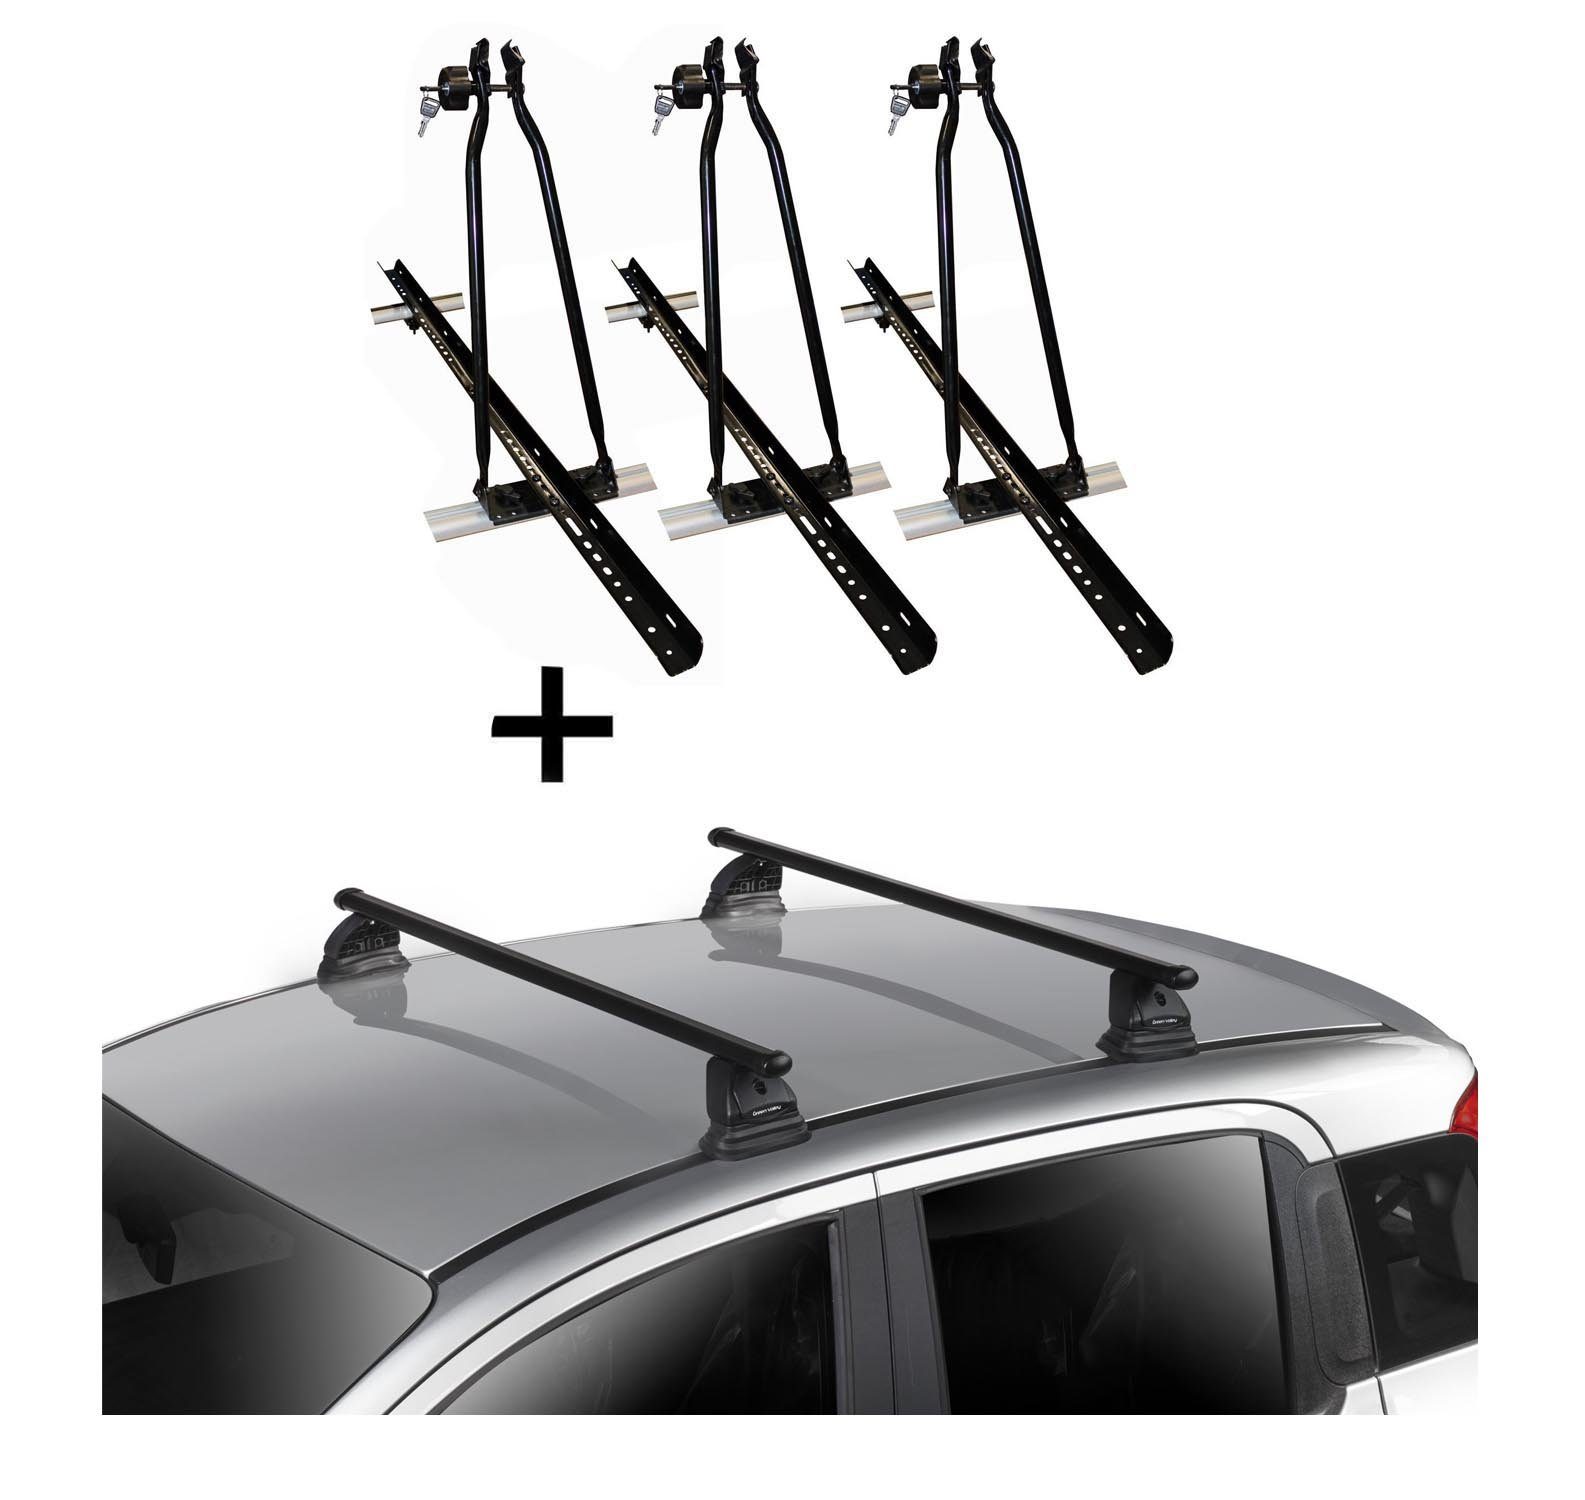 VDP Dachträger, 3x VDP Fahrradträger Dachfahrradträger + Dachträger VDP EVO Stahl kompatibel mit Peugeot 207 3-5 Türer 2006-2015